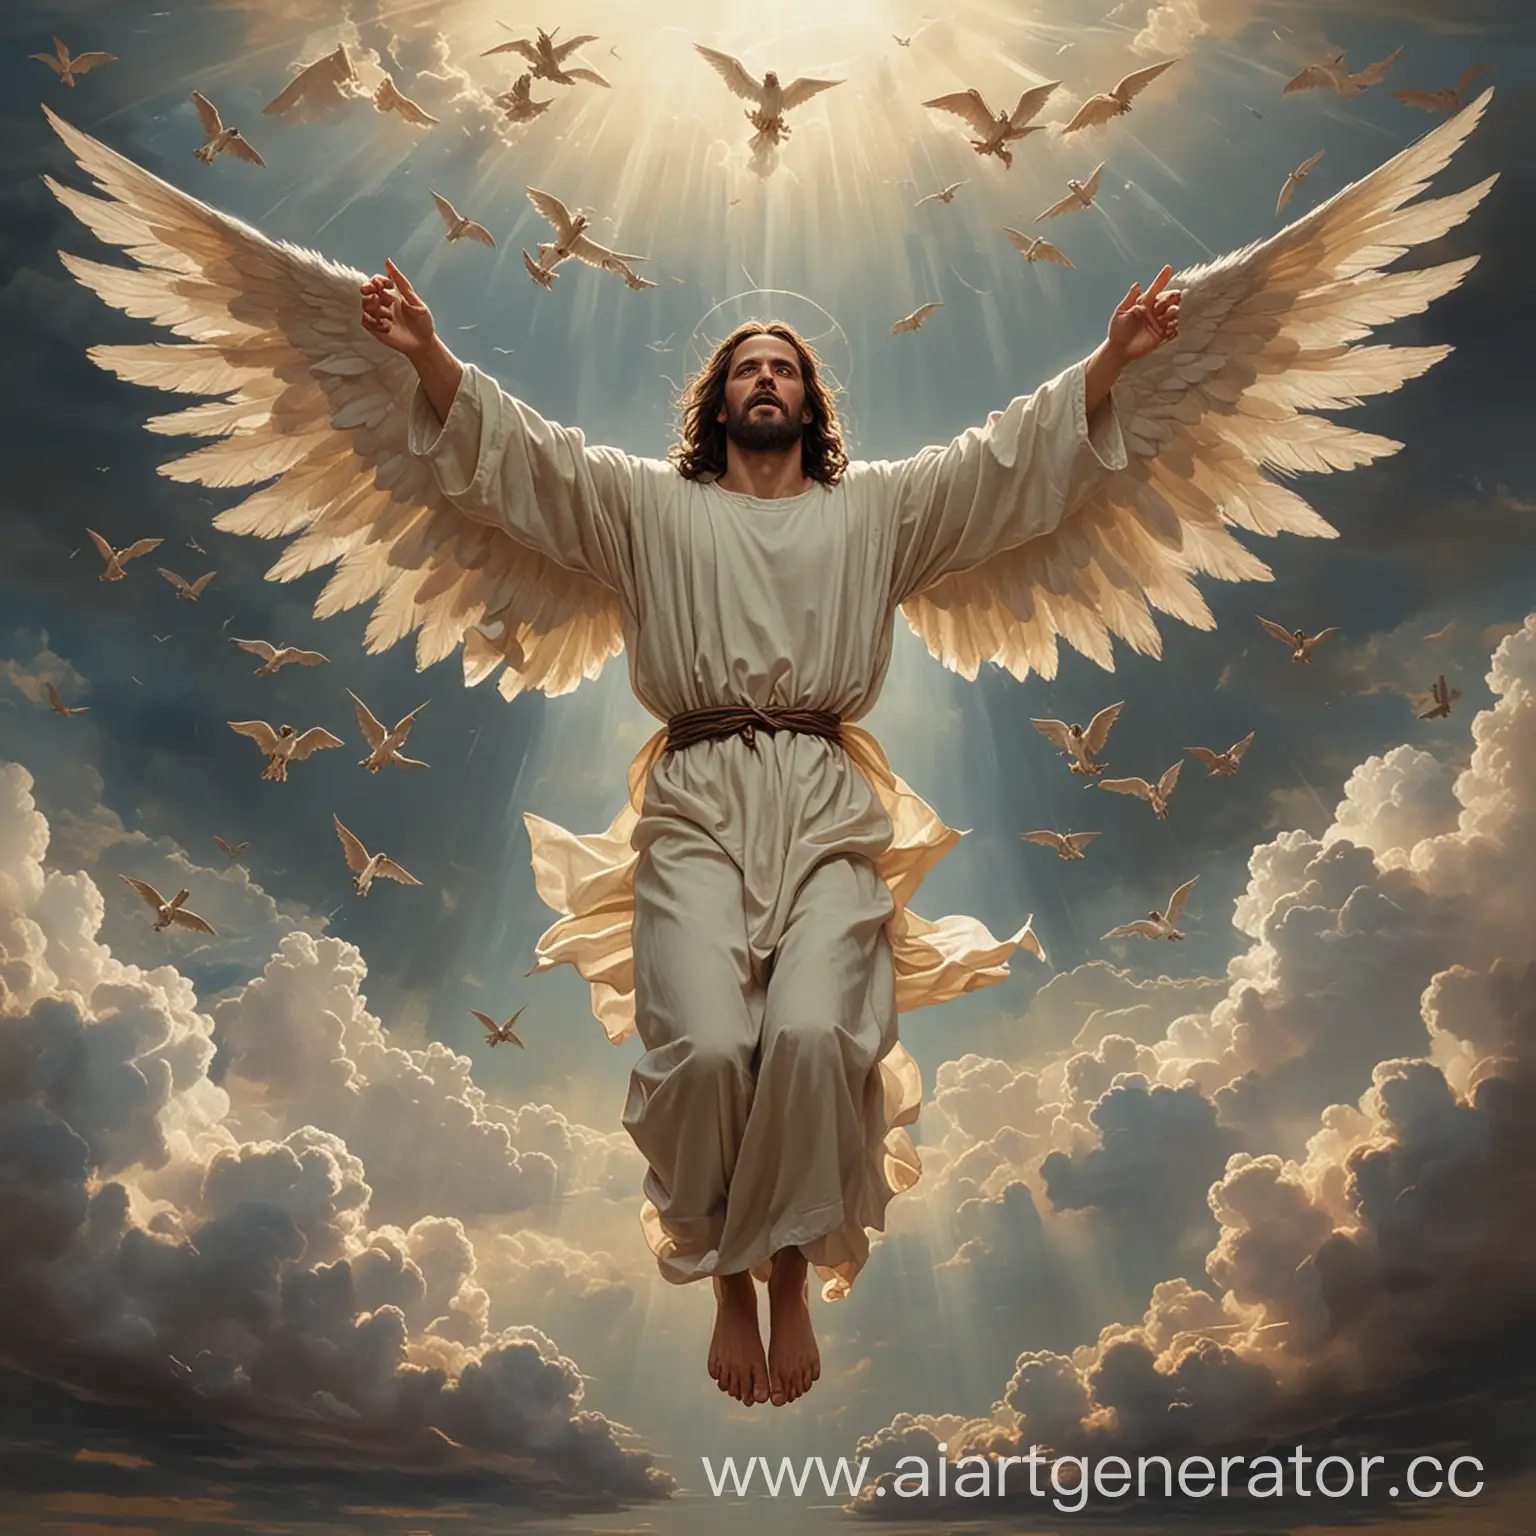 Нарисуй мне Иисуса в полный рост который парит на крыльях в небо, а под ним находятся дьяволы.
